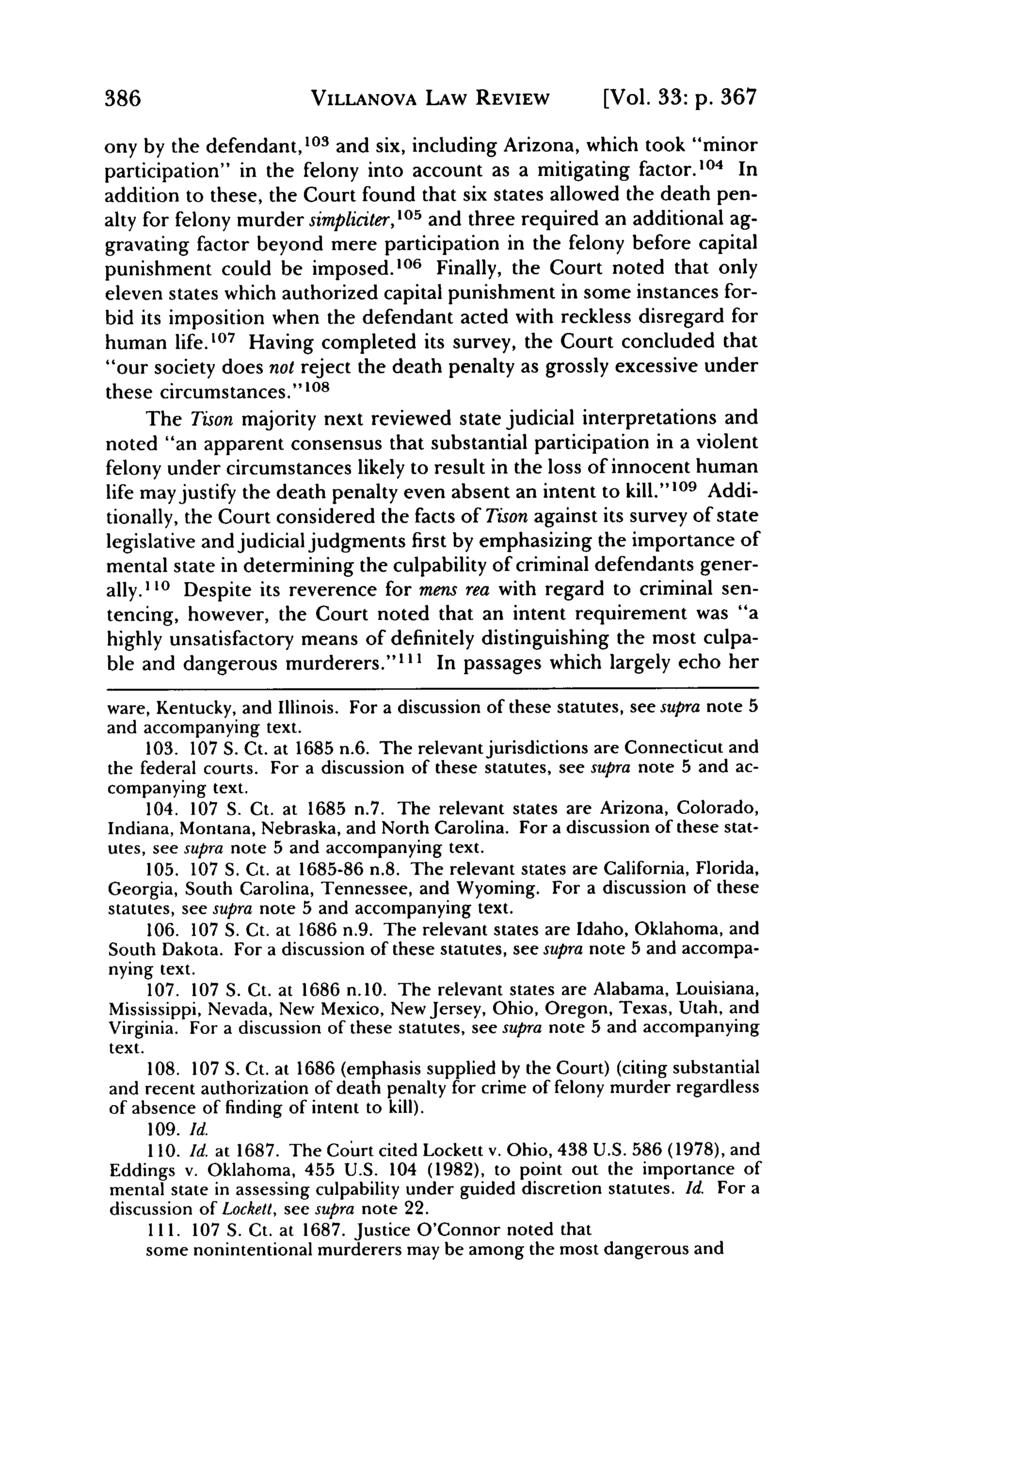 Villanova Law Review, Vol. 33, Iss. 2 [1988], Art. 4 386 VILLANOVA LAW REVIEW [Vol. 33: p.